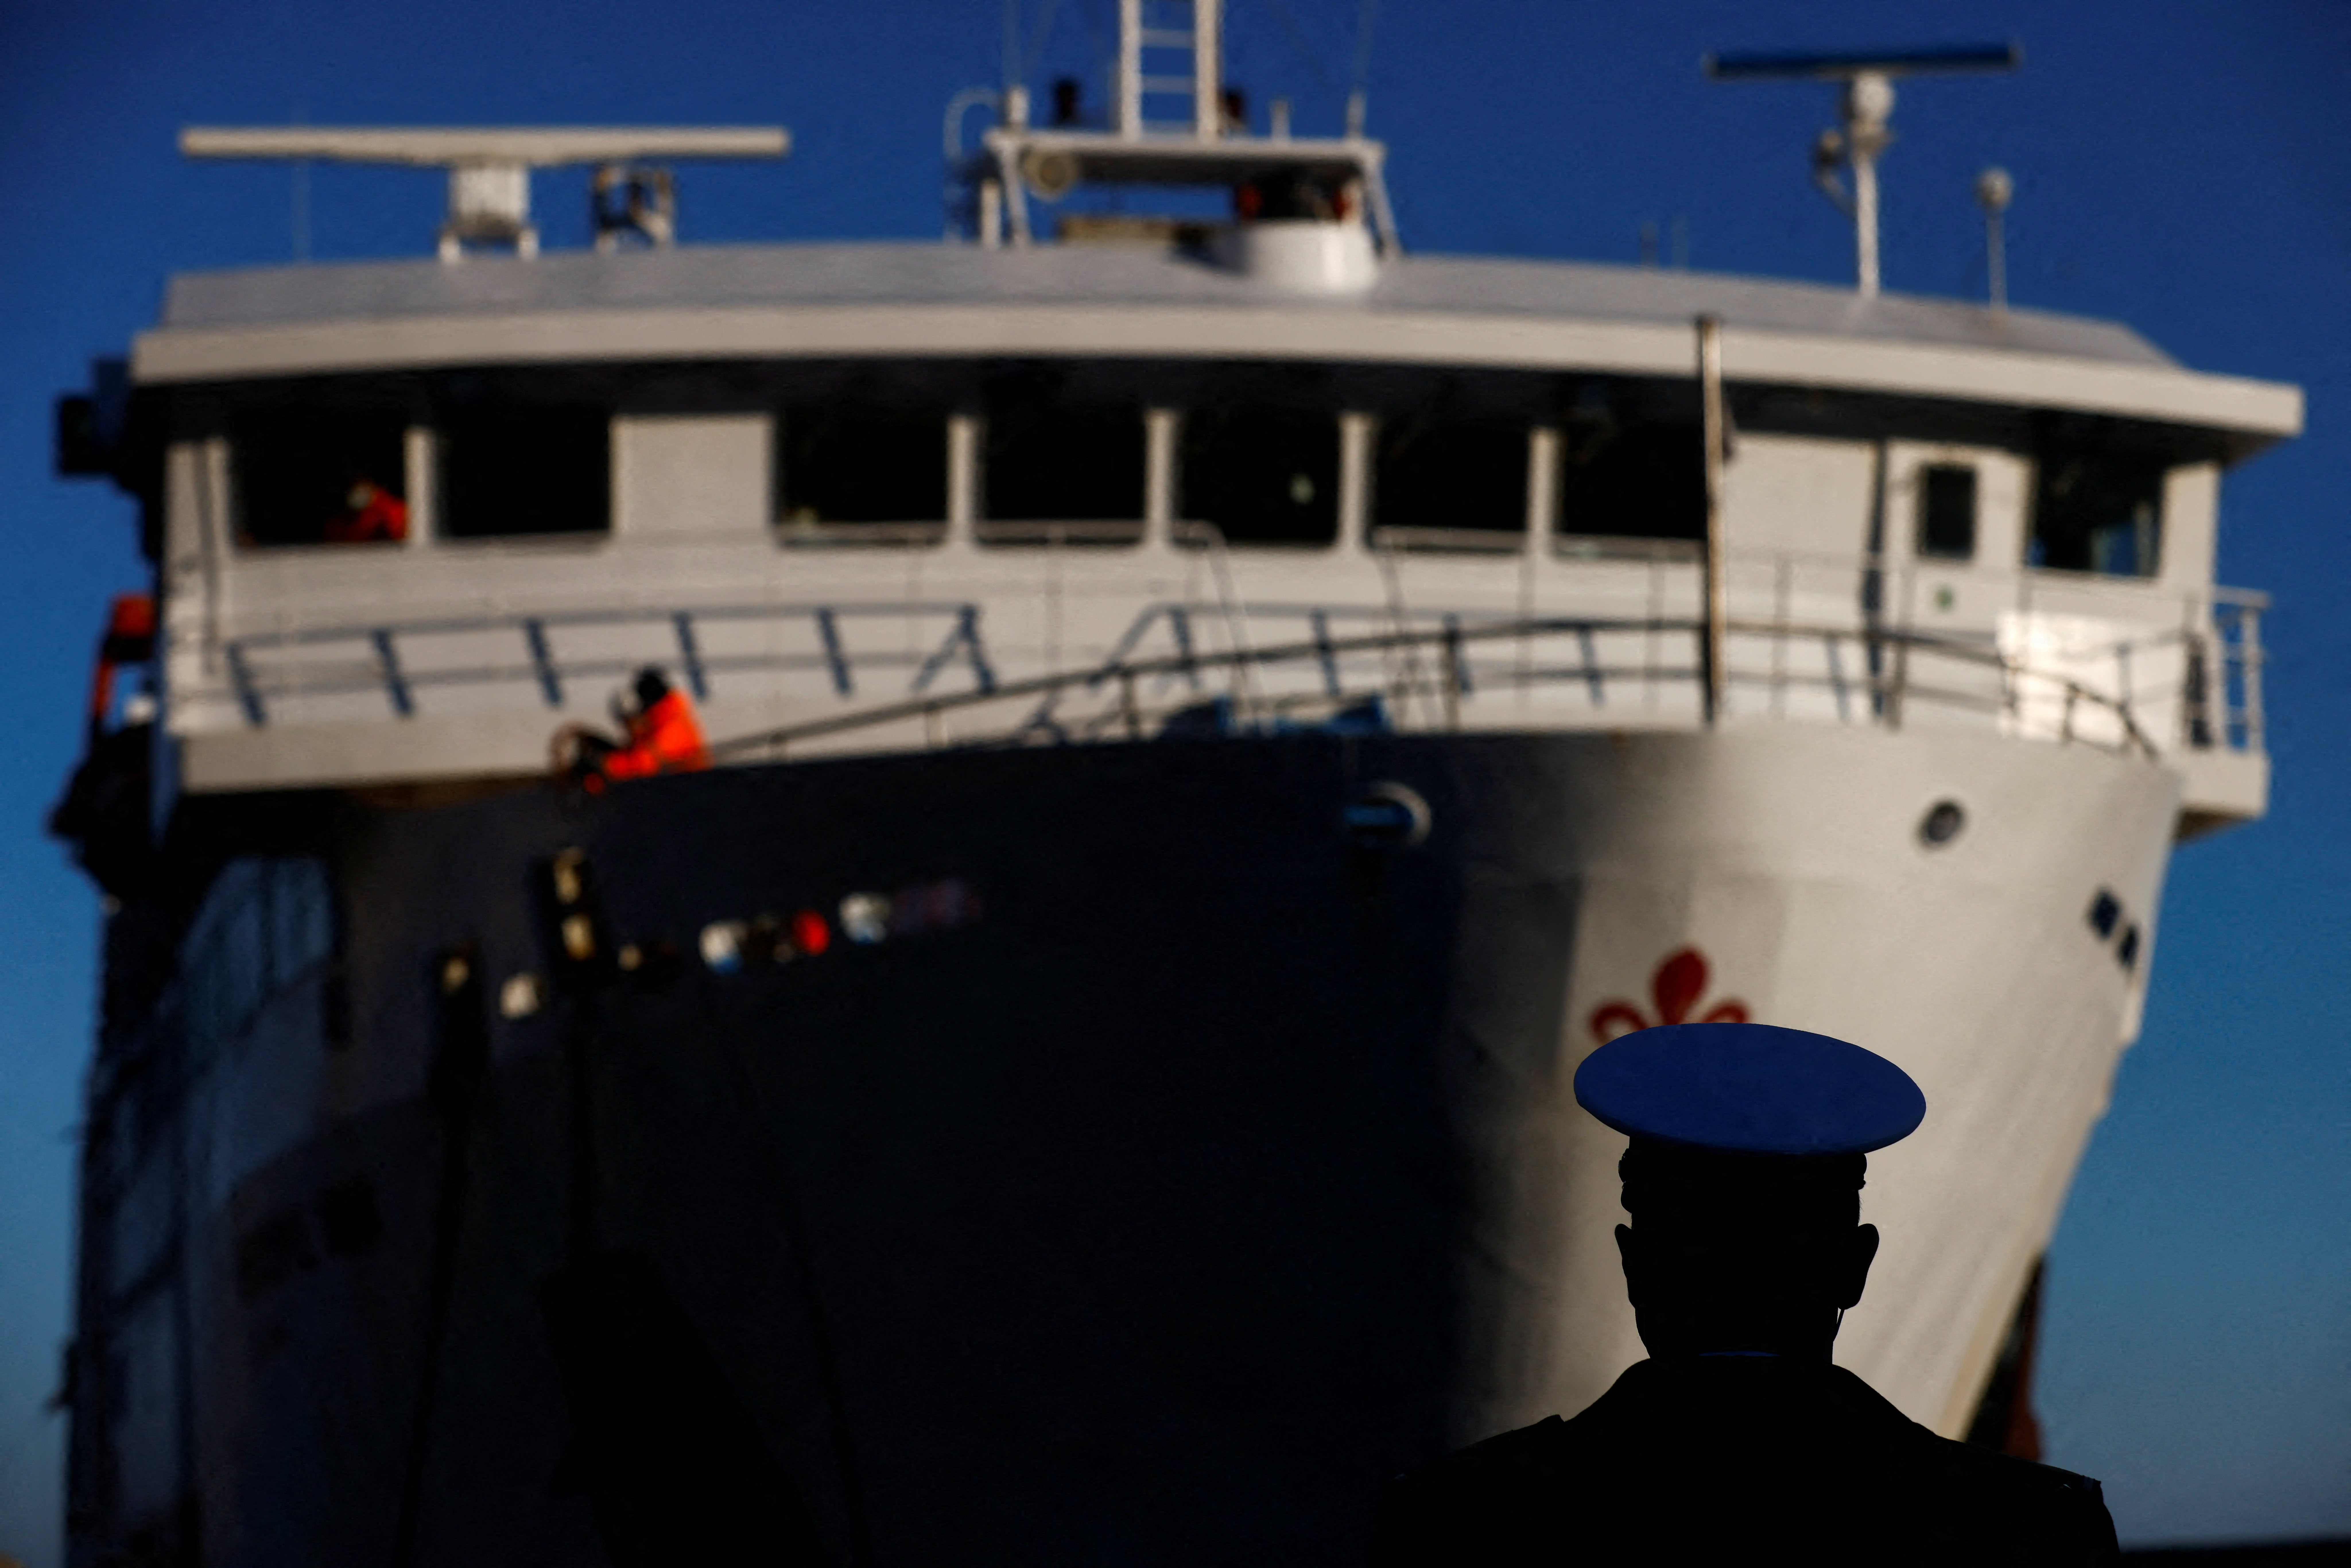 חבר ברשויות הנמל מסתכל על מעבורת שהגיעה ביום השנה העשירי לתאונת קוסטה קונקורדיה שהרגה 32 בני אדם לאחר שהתהפכה וטבעה מול החוף, באי ג'יליו, איטליה, 13 בינואר 2022. REUTERS/Yara נרדי